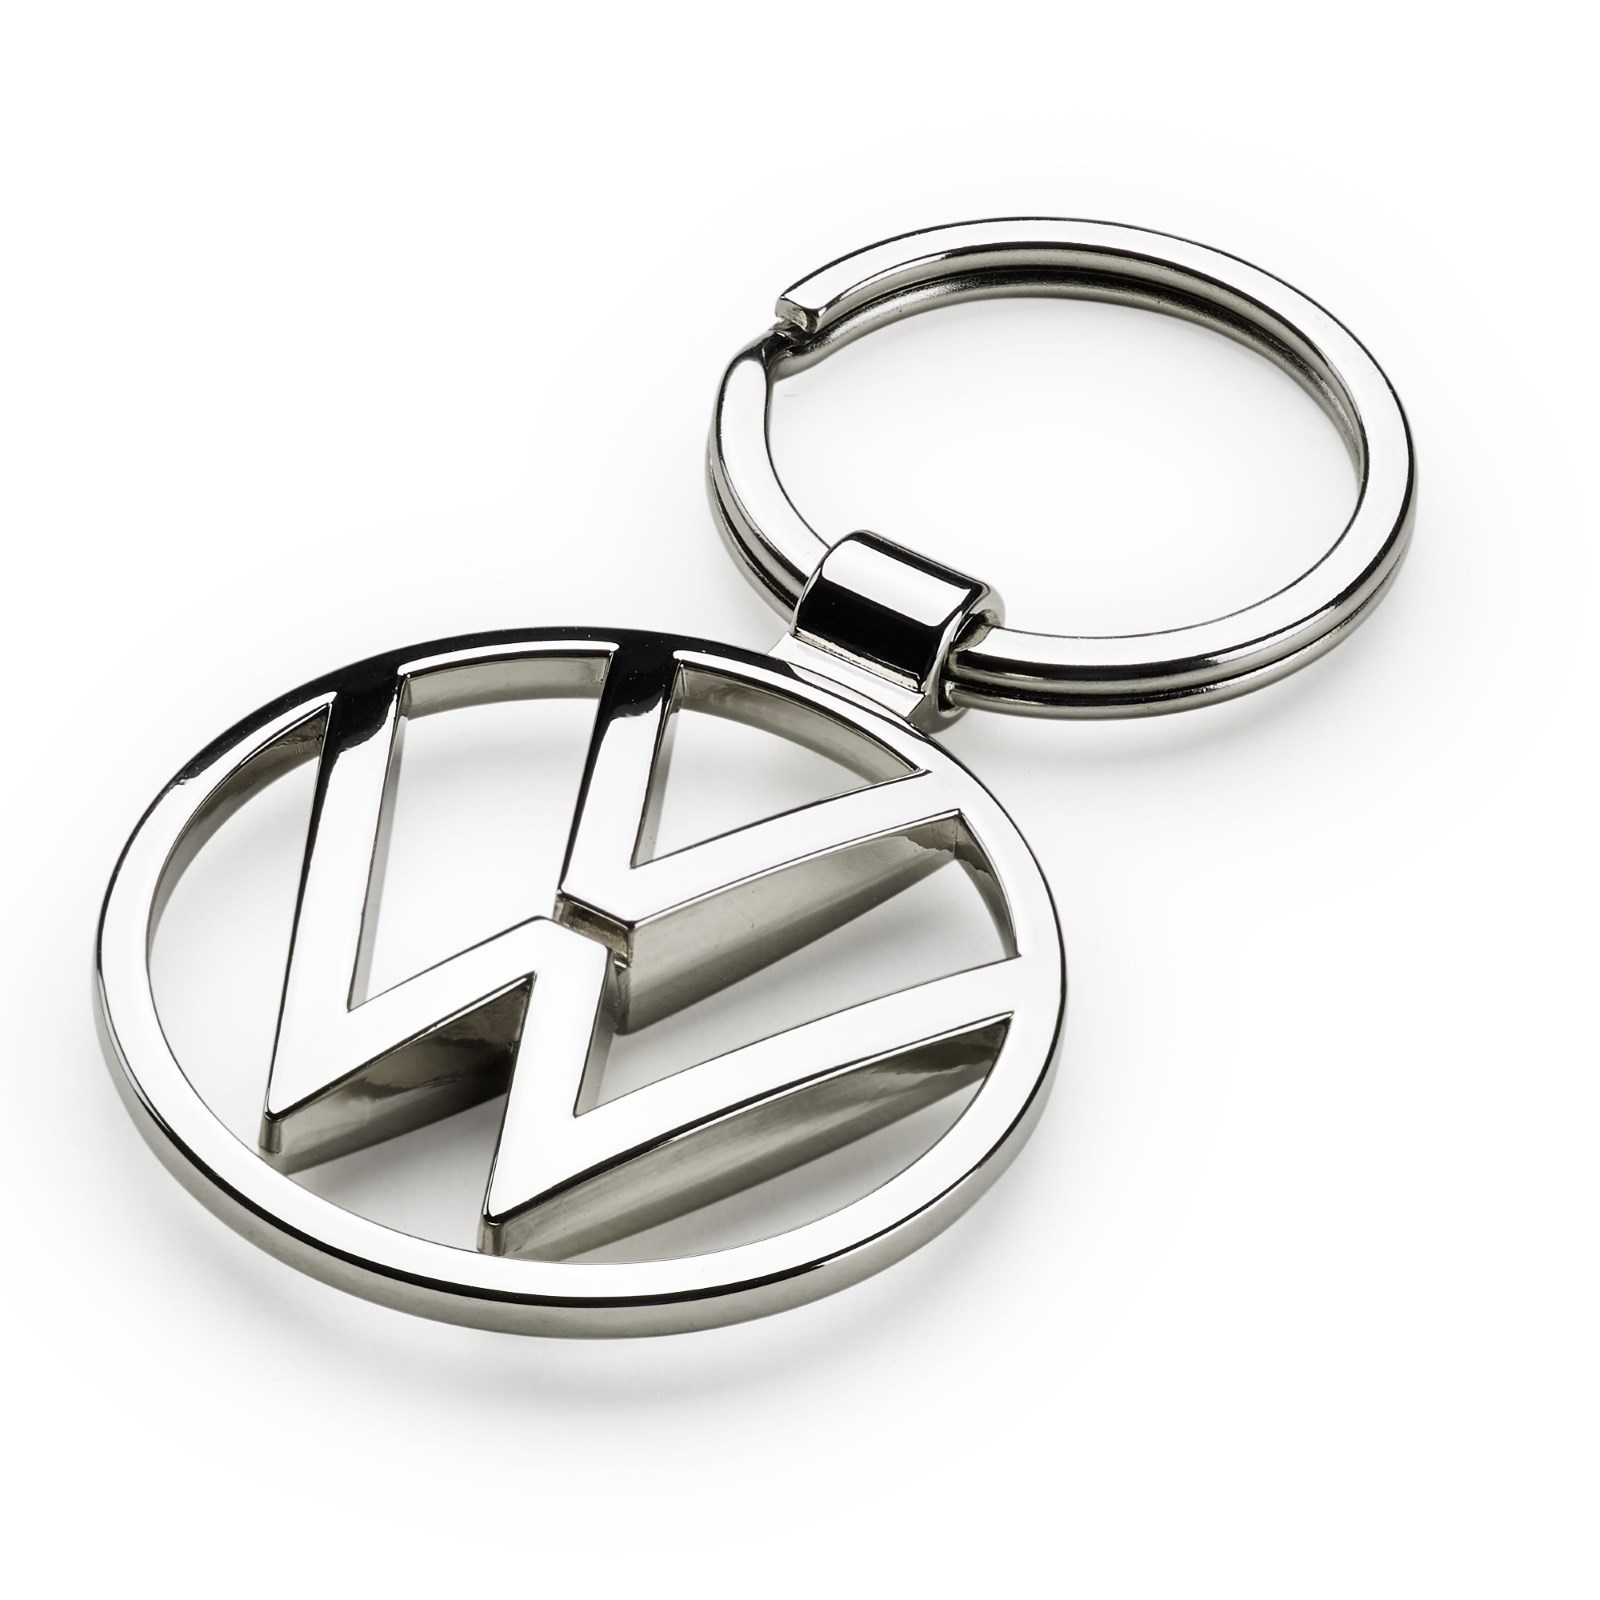 VW Schlüsselanhänger Golf 1 GTI Grill Anhänger Key Ring